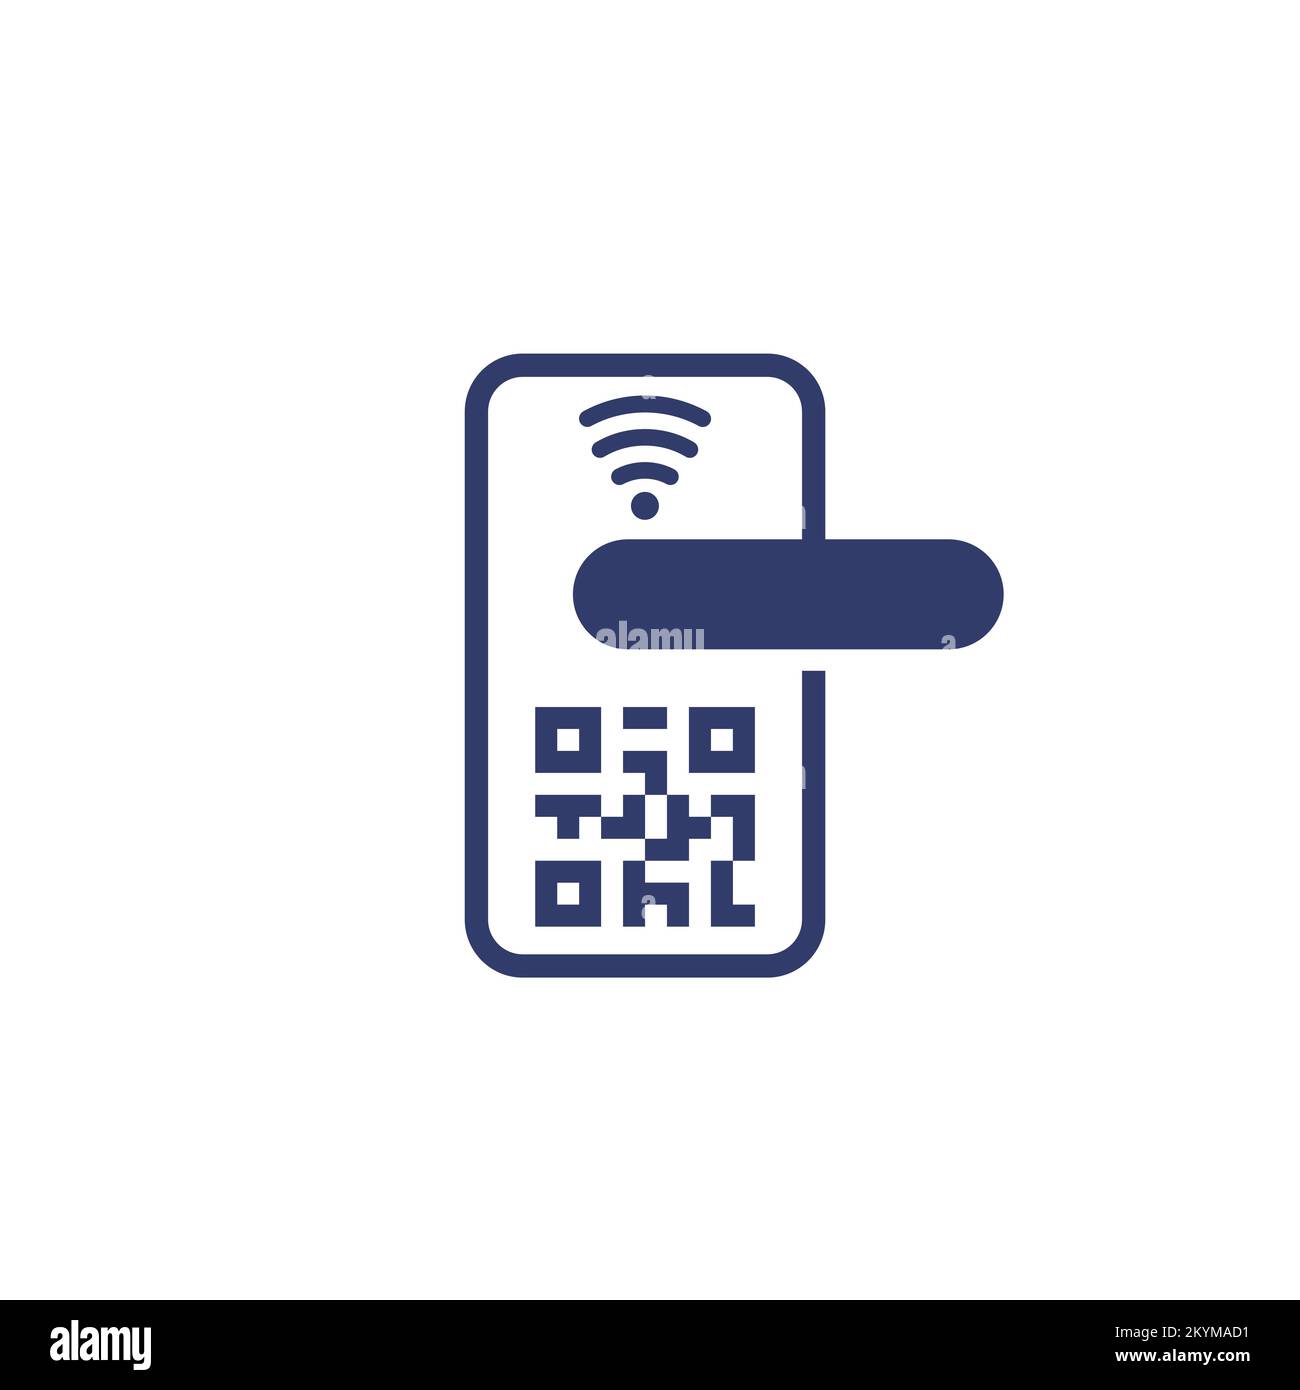 smart door lock with qr code icon Stock Vector